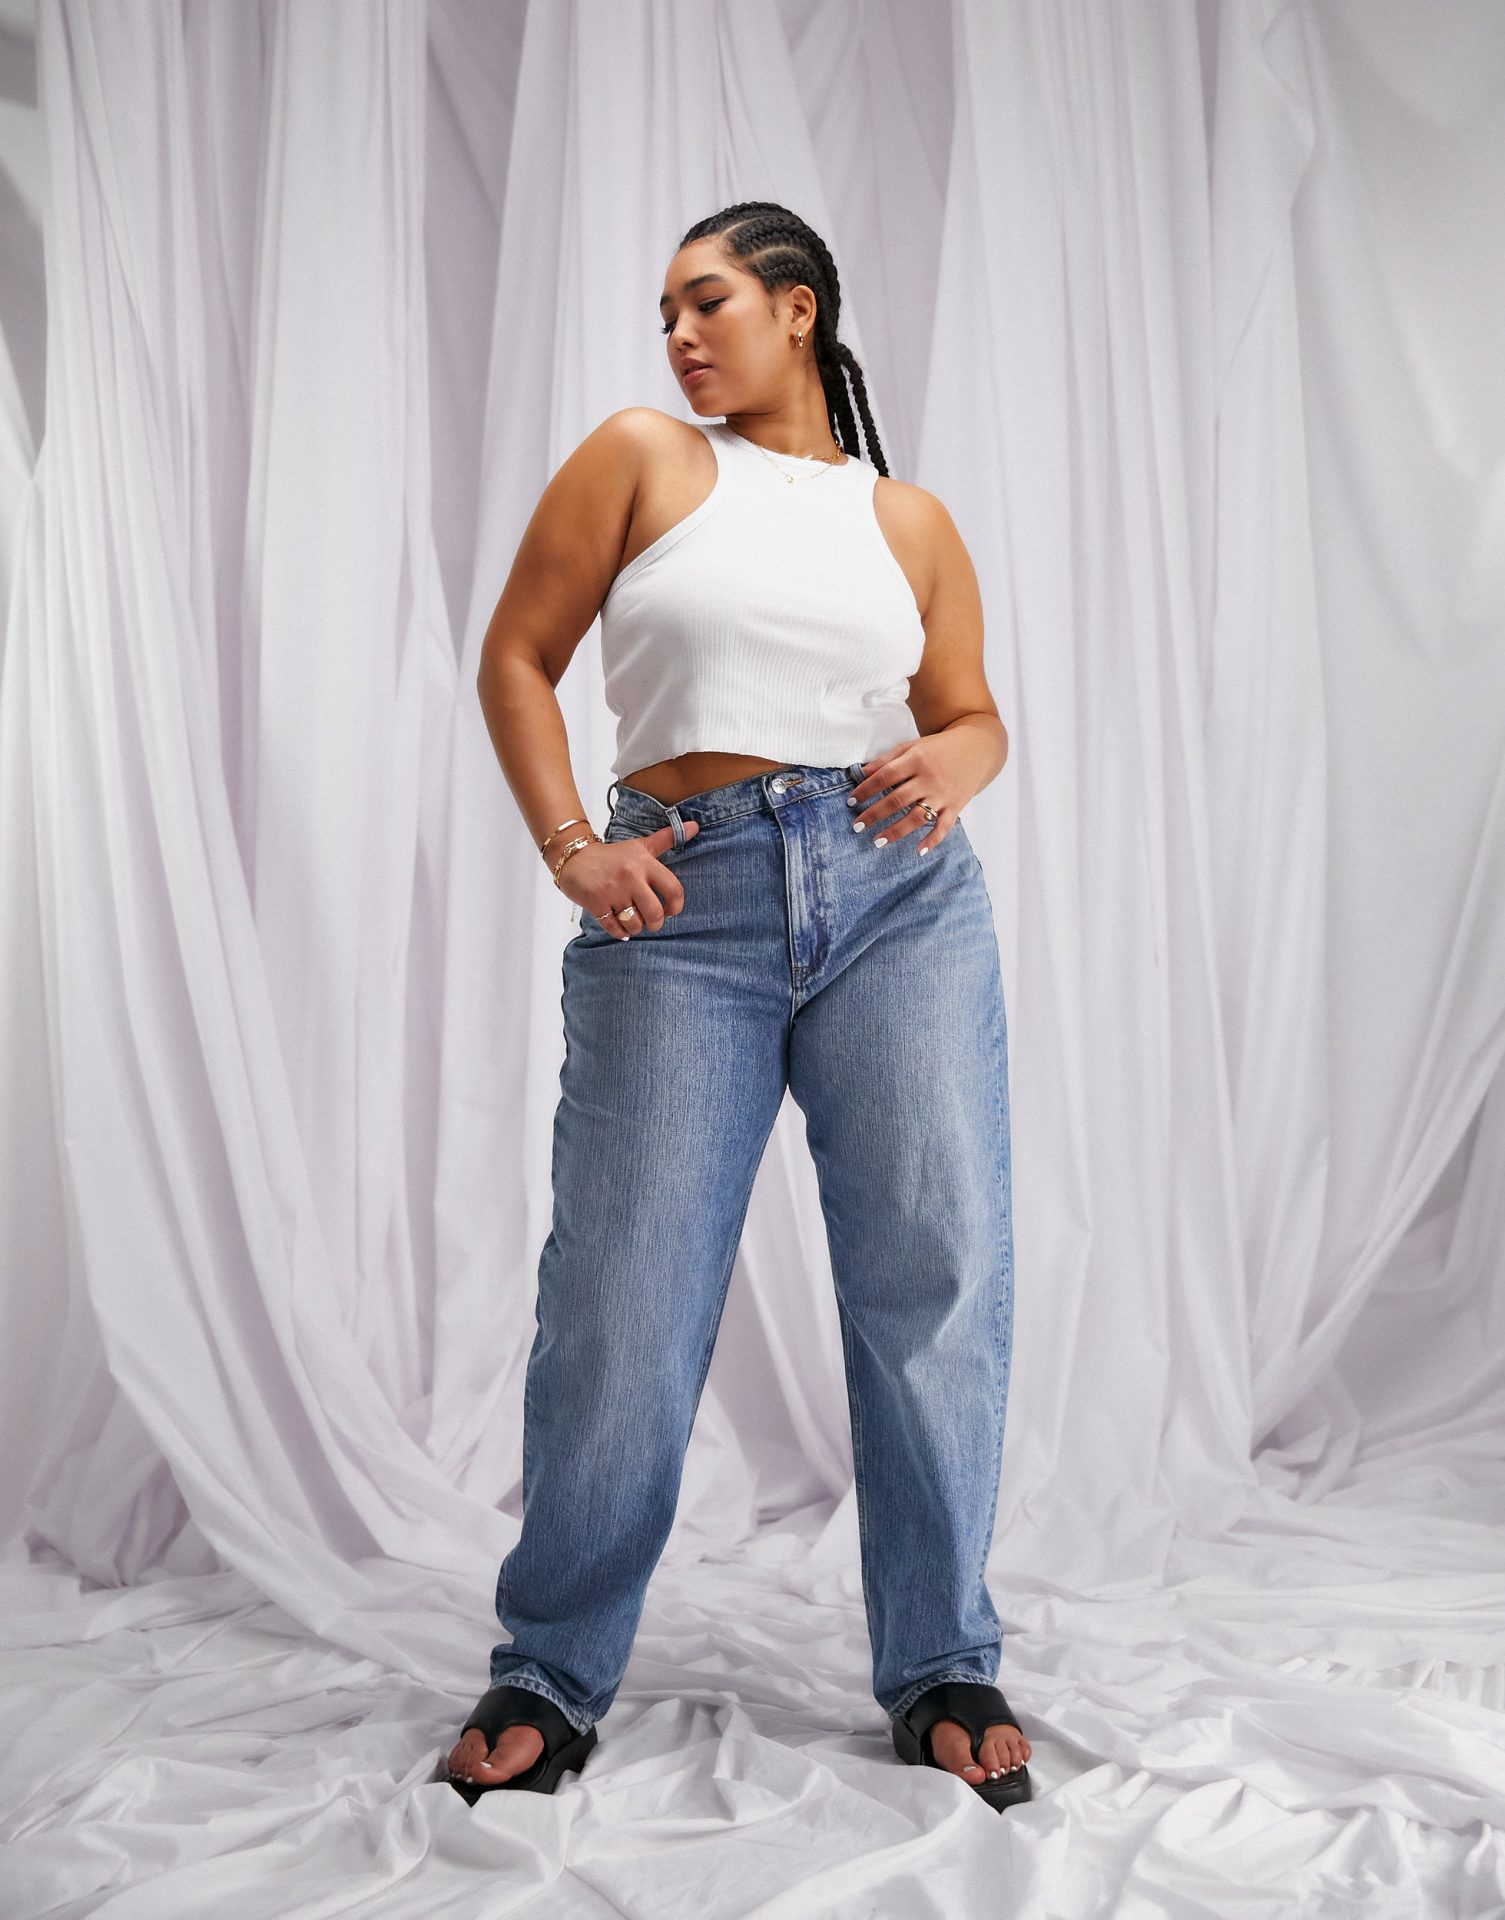 21 Best Baggy Jeans For Women in 2022